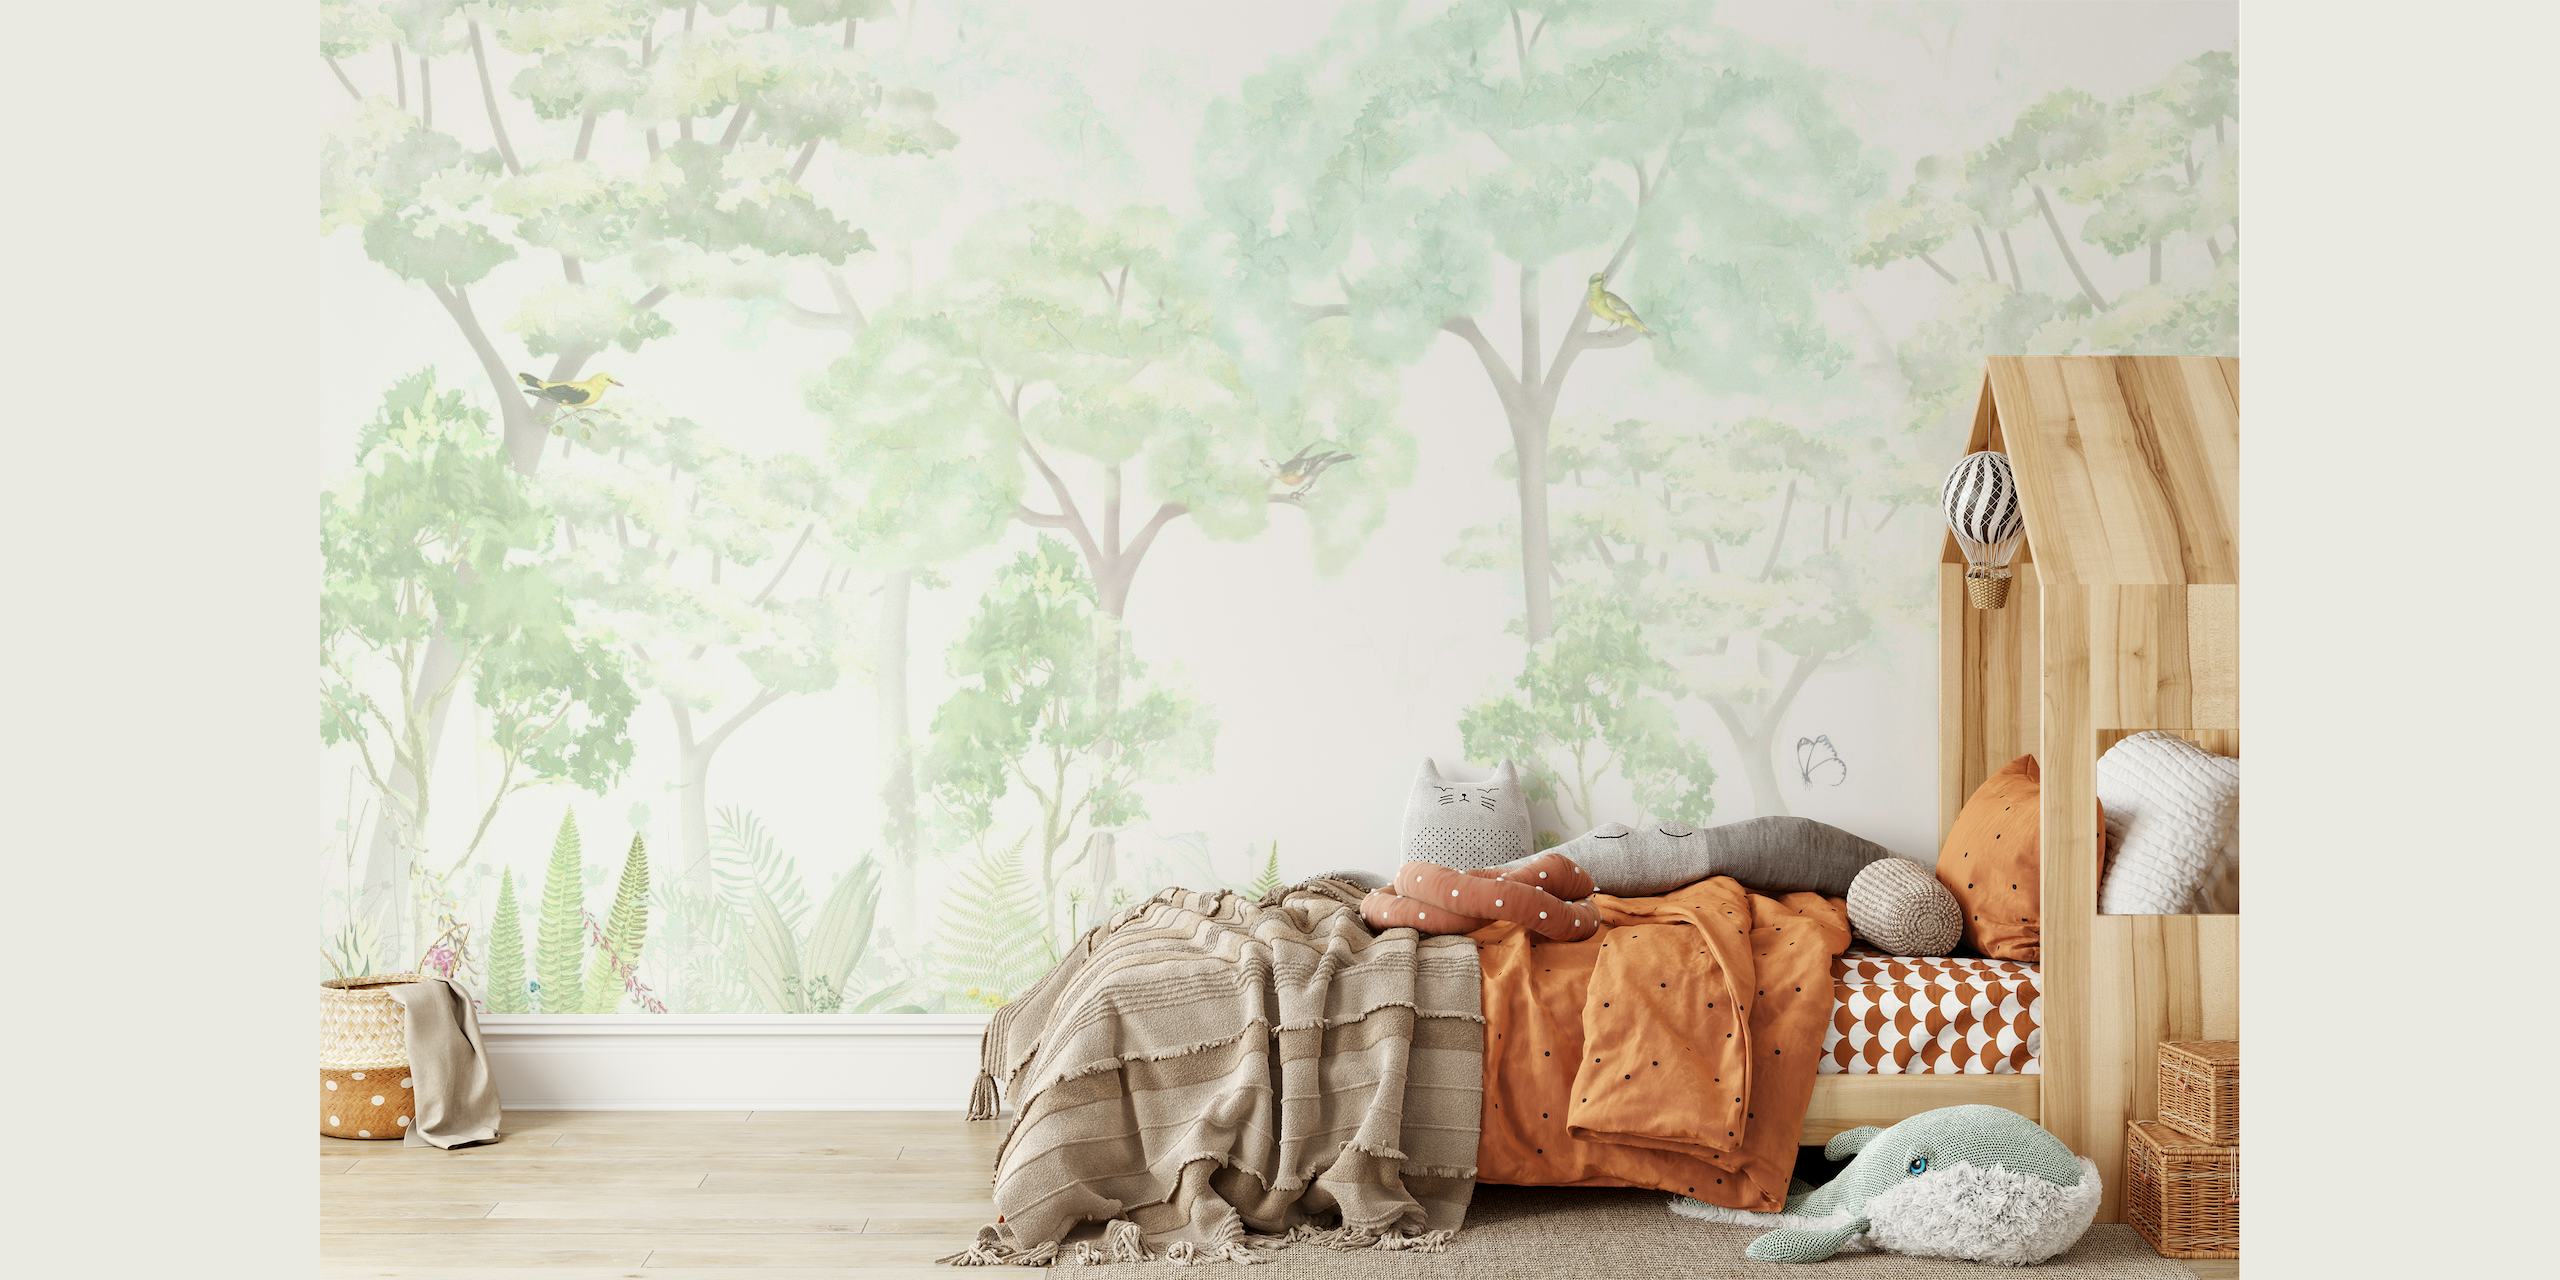 Papier peint mural forêt fantastique et fantaisiste avec des tons verts doux et des arbres éthérés